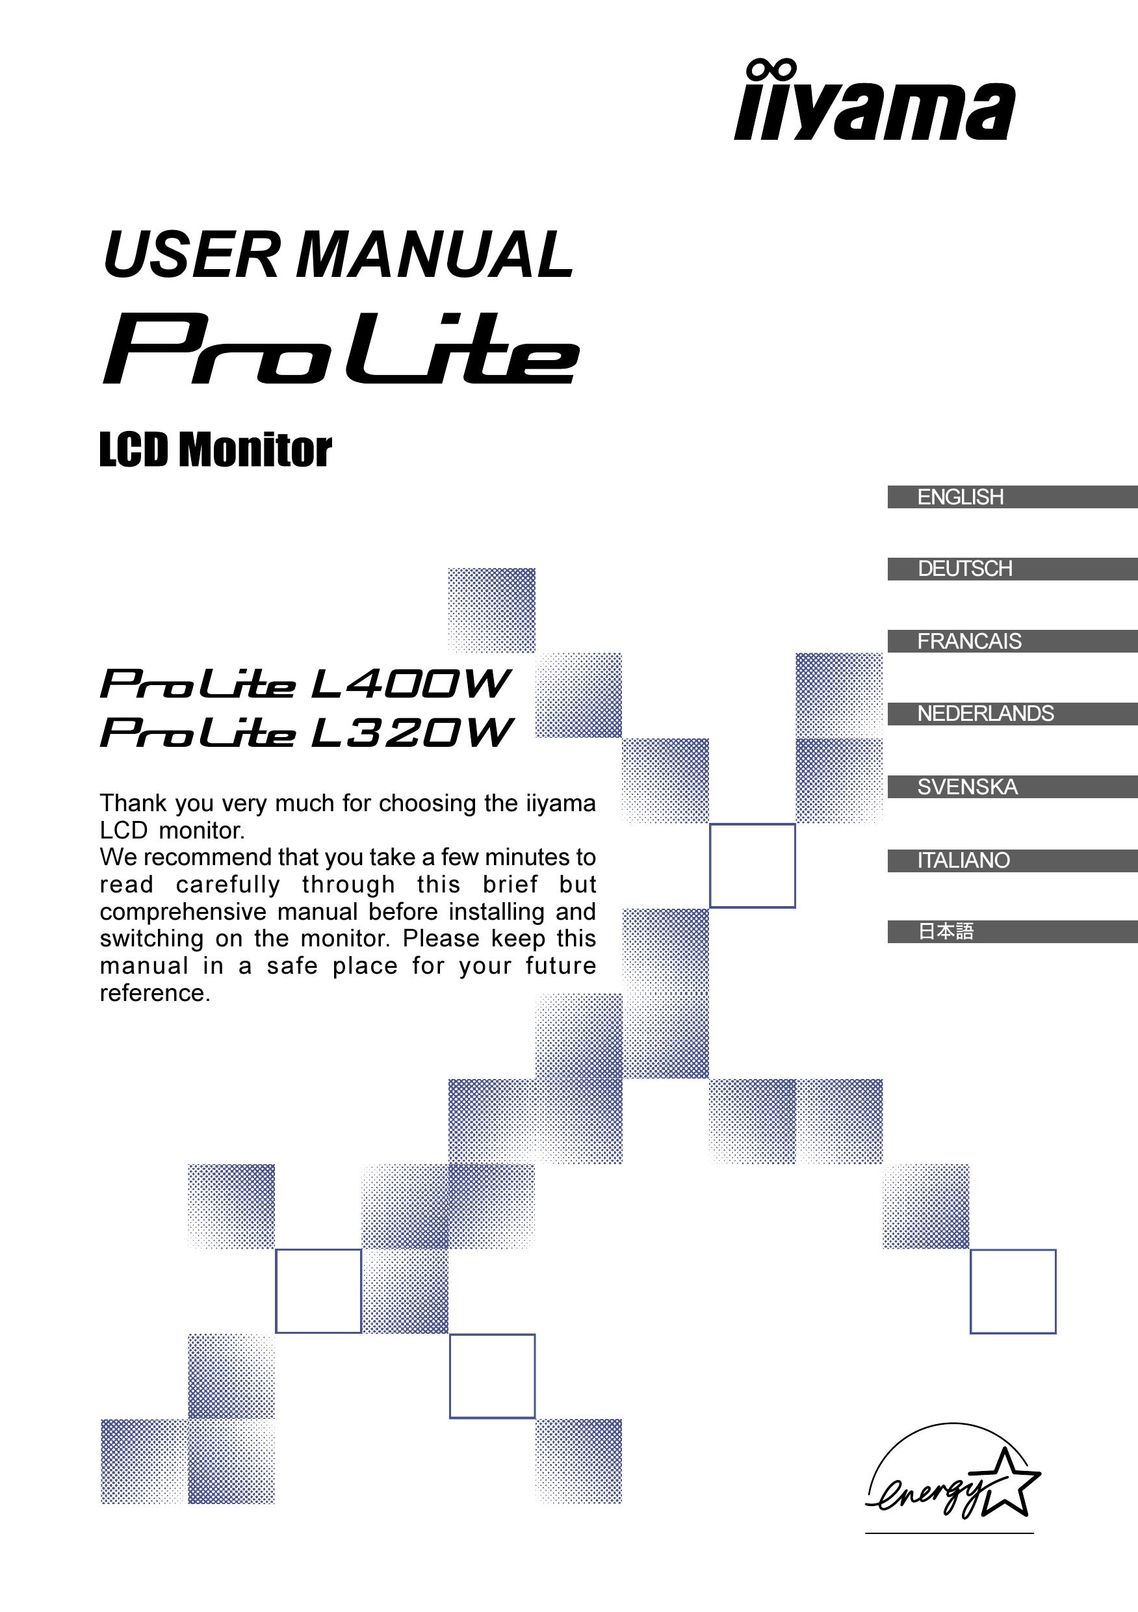 Iiyama PLL400W / PLL320W Car Video System User Manual